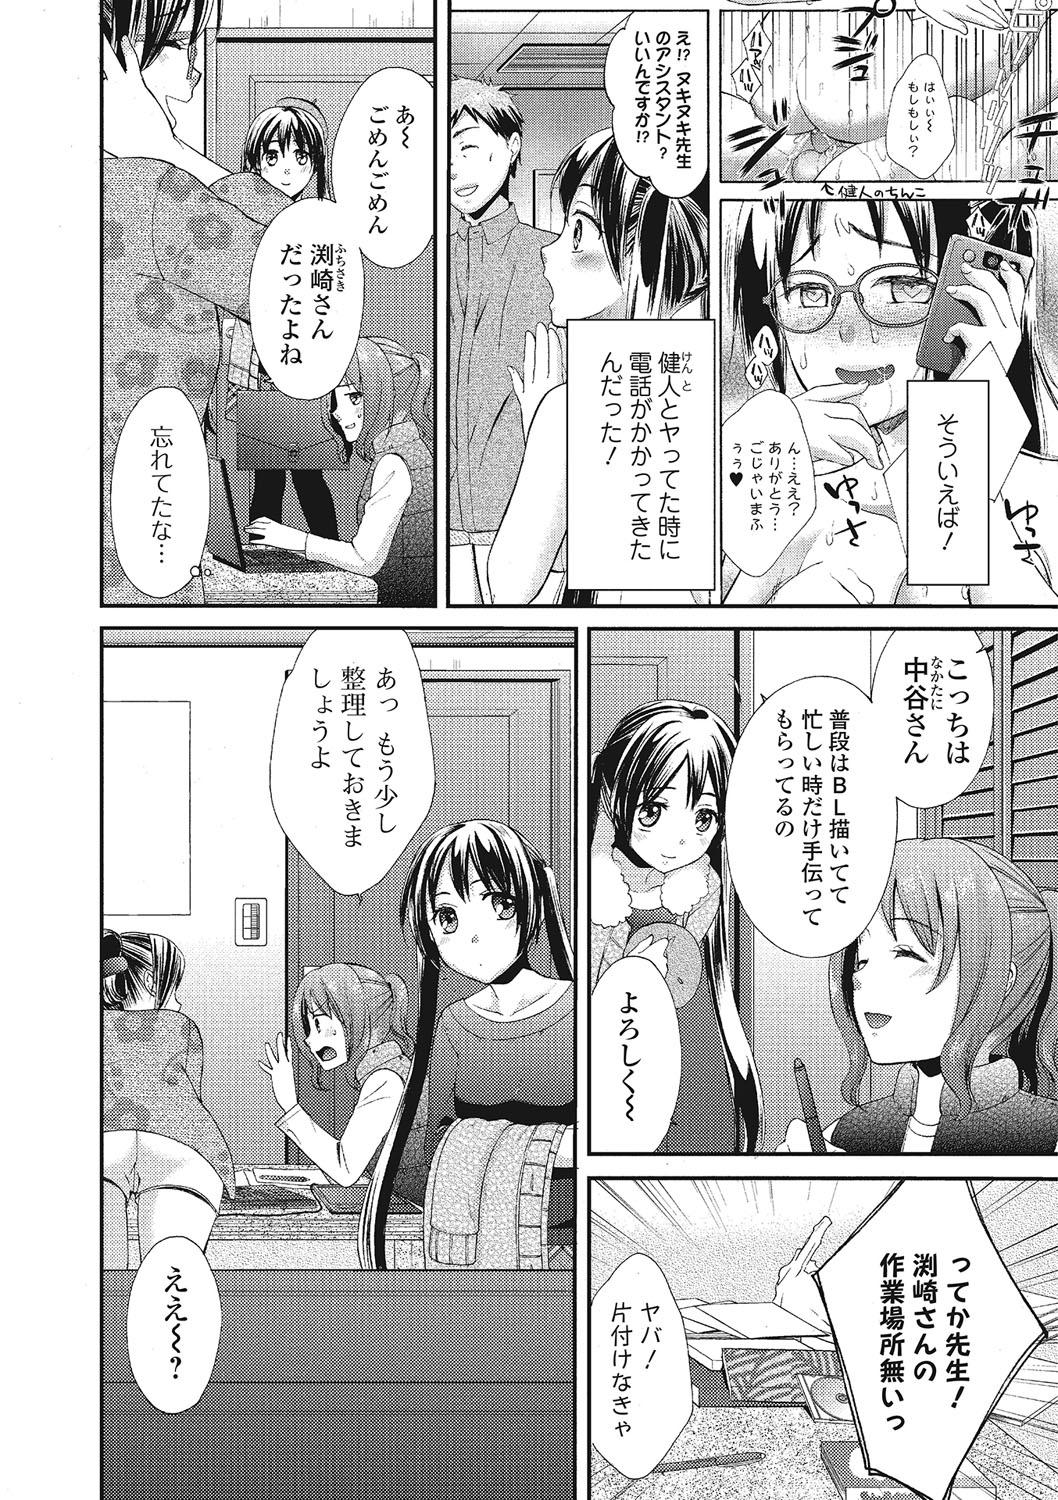 Mojoman Josei ga Kaku! Ecchi na Manga no Tsukurikata 64